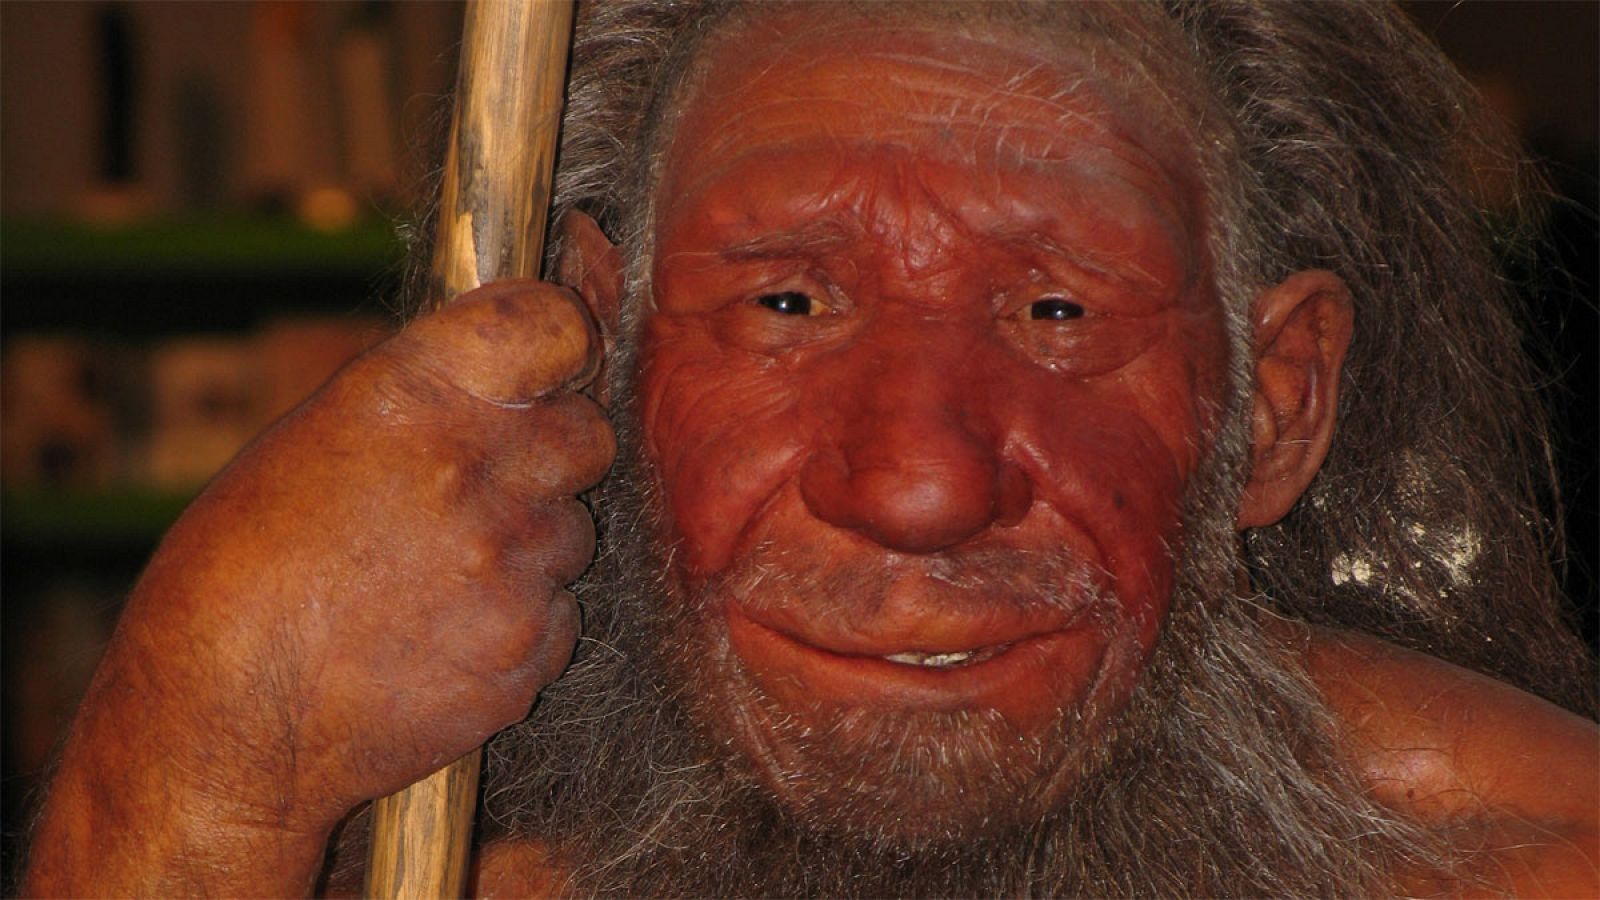 Investigaciónes arqueológicas ya habían demostrado que los neandertales practicaban la compasión y el cuidado de heridos y moribundos.